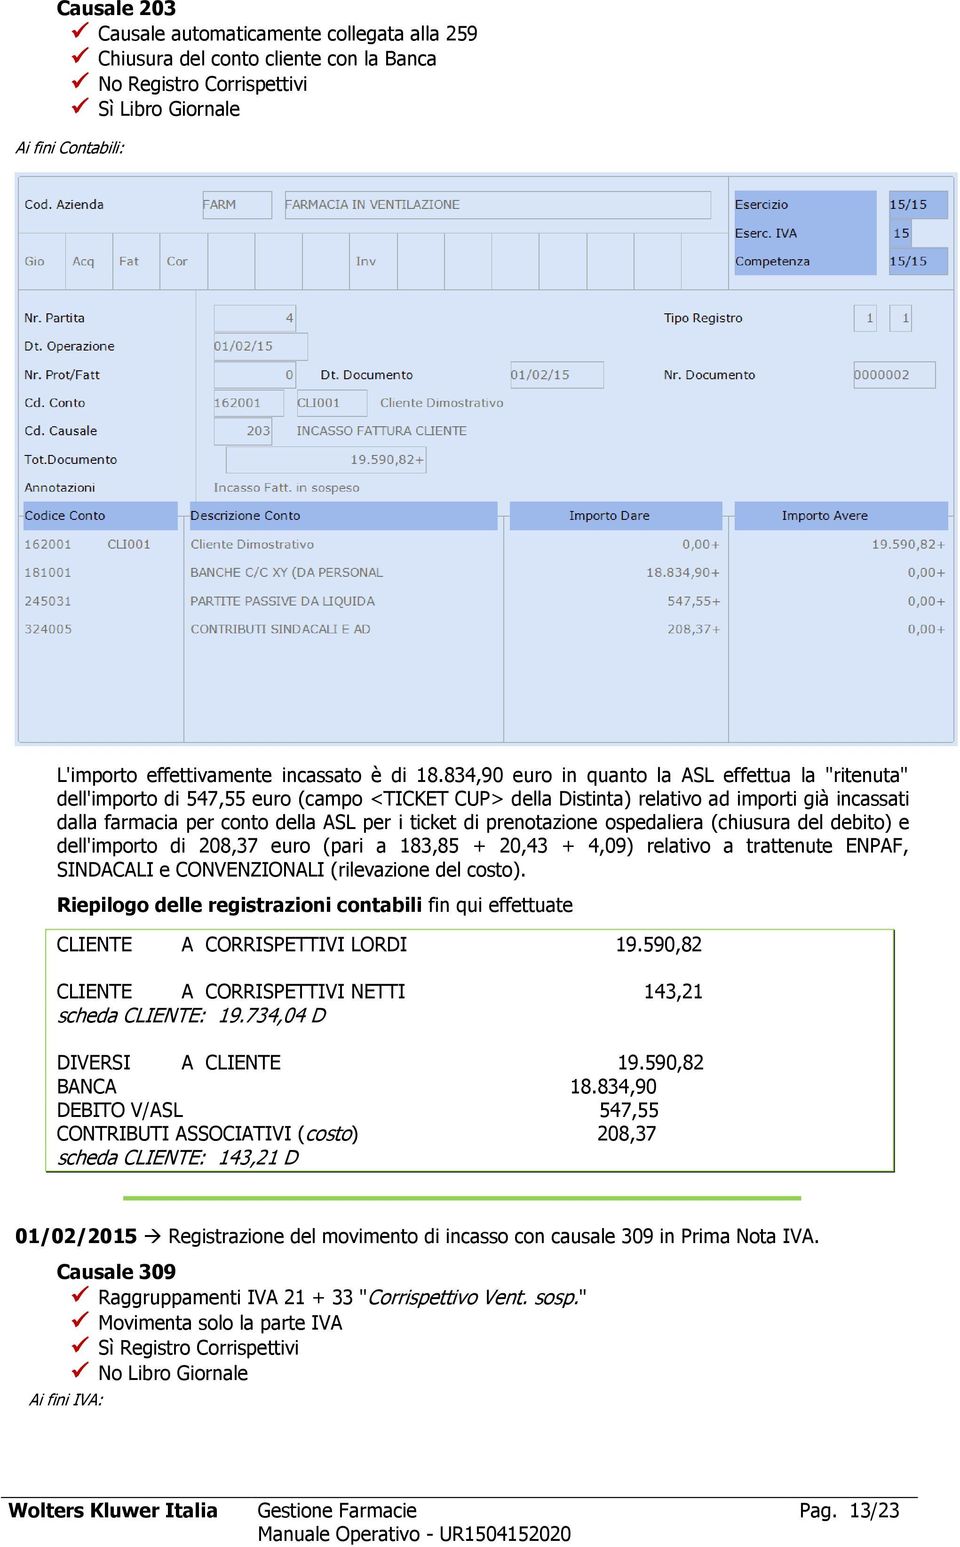 ticket di prenotazione ospedaliera (chiusura del debito) e dell'importo di 208,37 euro (pari a 183,85 + 20,43 + 4,09) relativo a trattenute ENPAF, SINDACALI e CONVENZIONALI (rilevazione del costo).